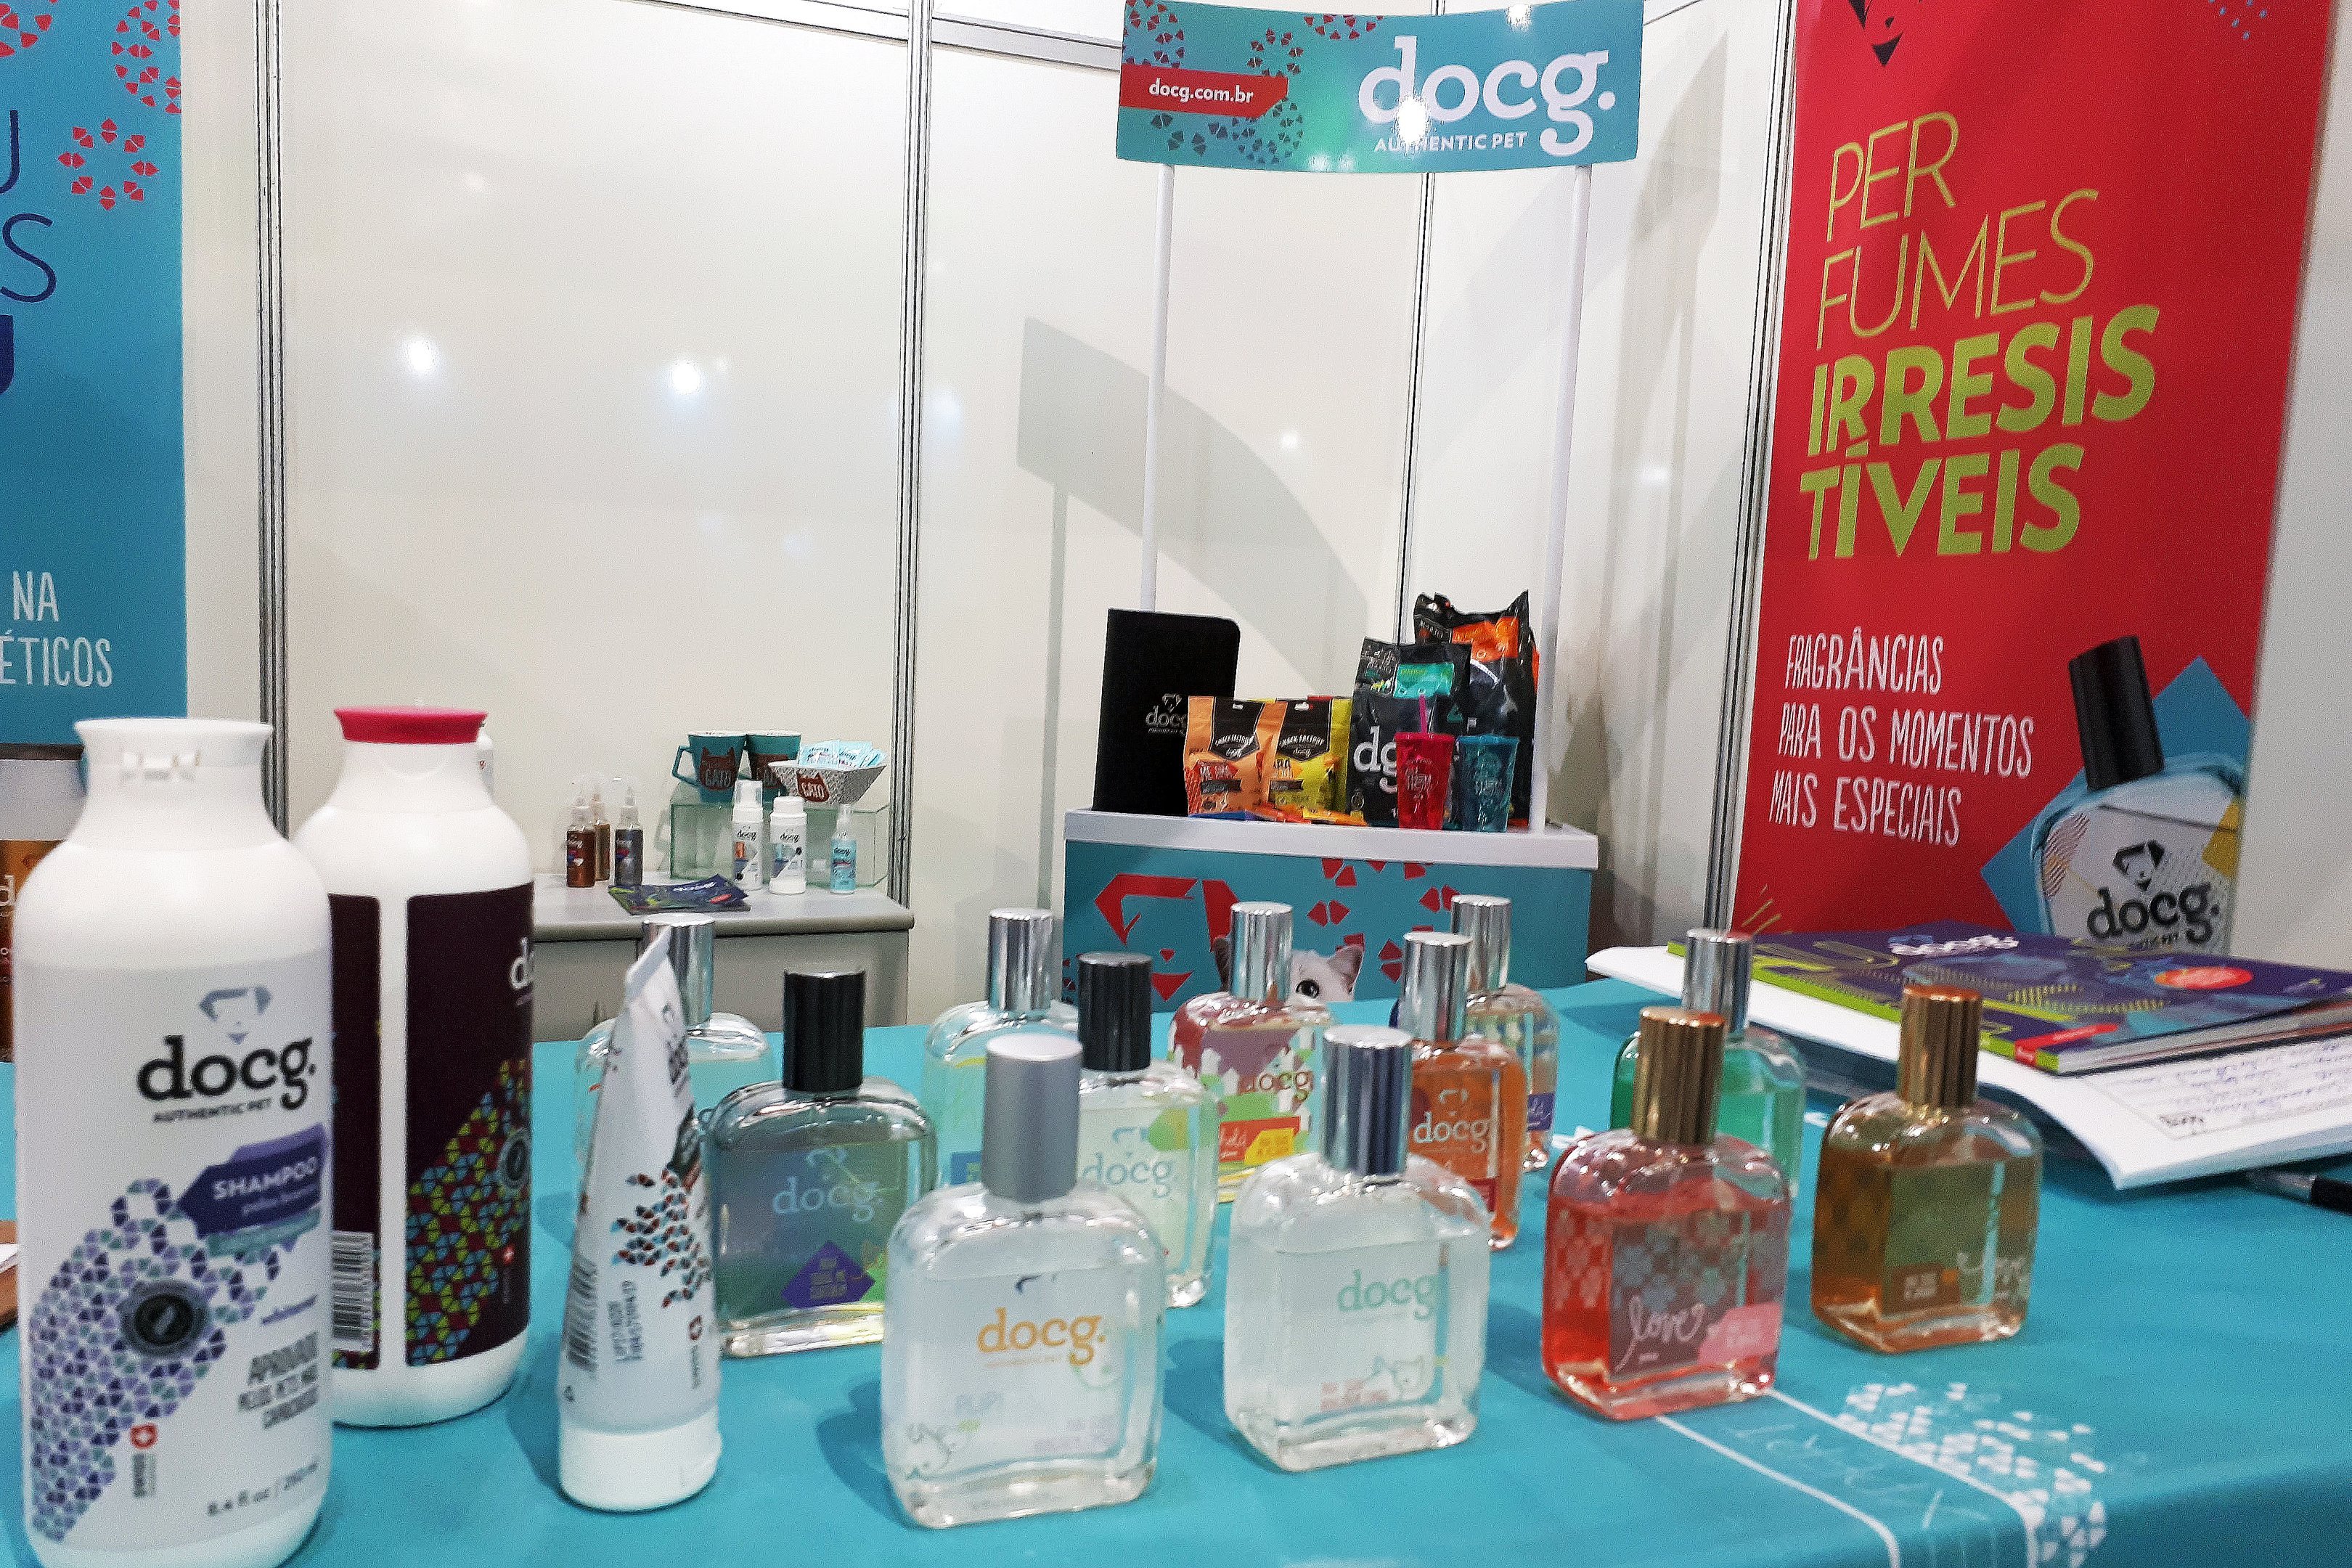 Produtos da Docg, venda direta de produtos para animais de estimação